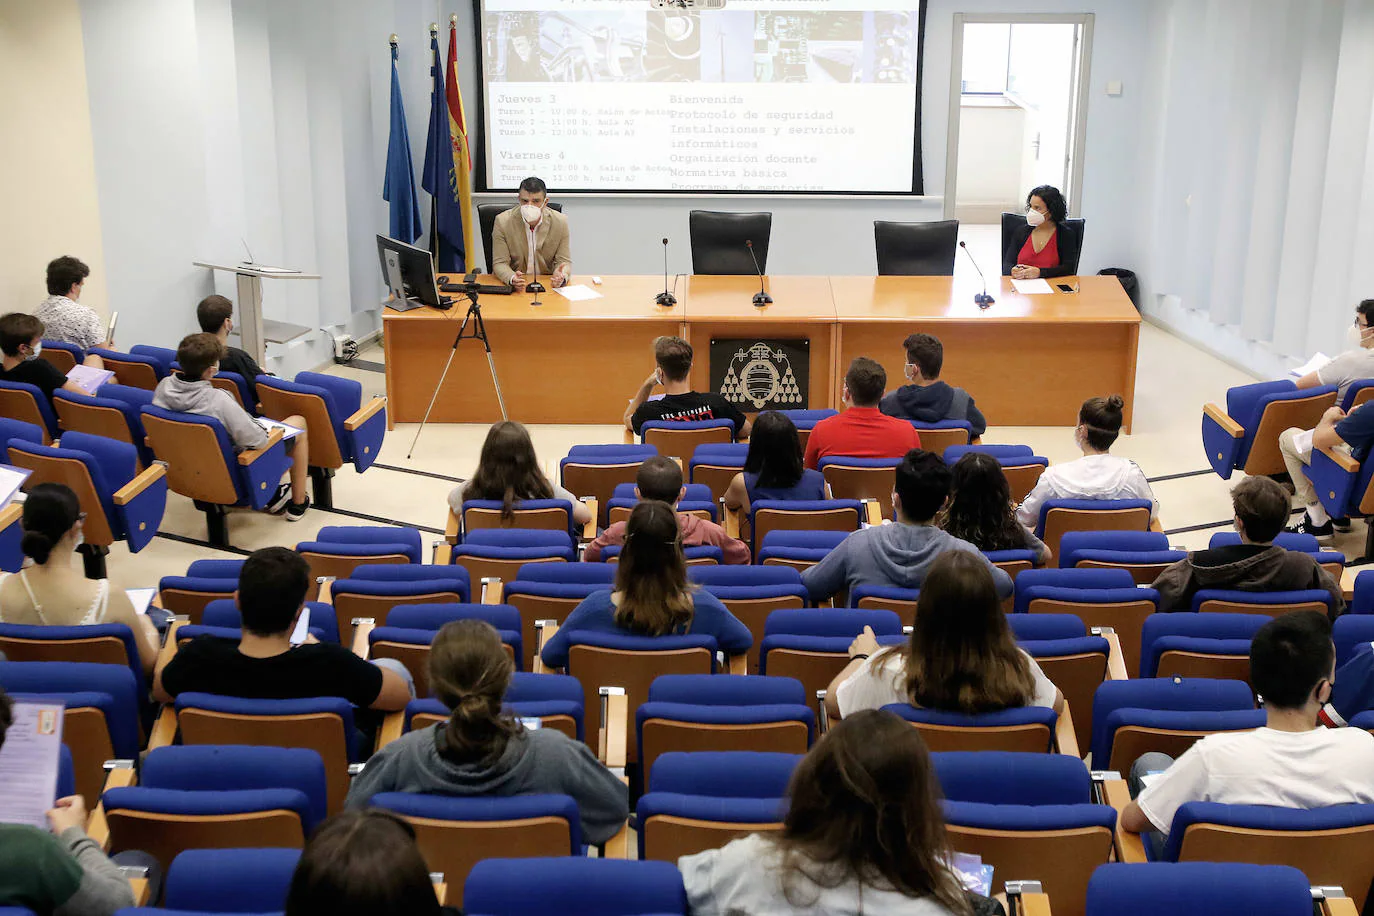 La Escuela Politécnica de Ingeniería de Gijón celebra esta semana dos jornadas de acogida para los estudiantes de nuevo ingreso, que superan los 700 en el centro gijonés.